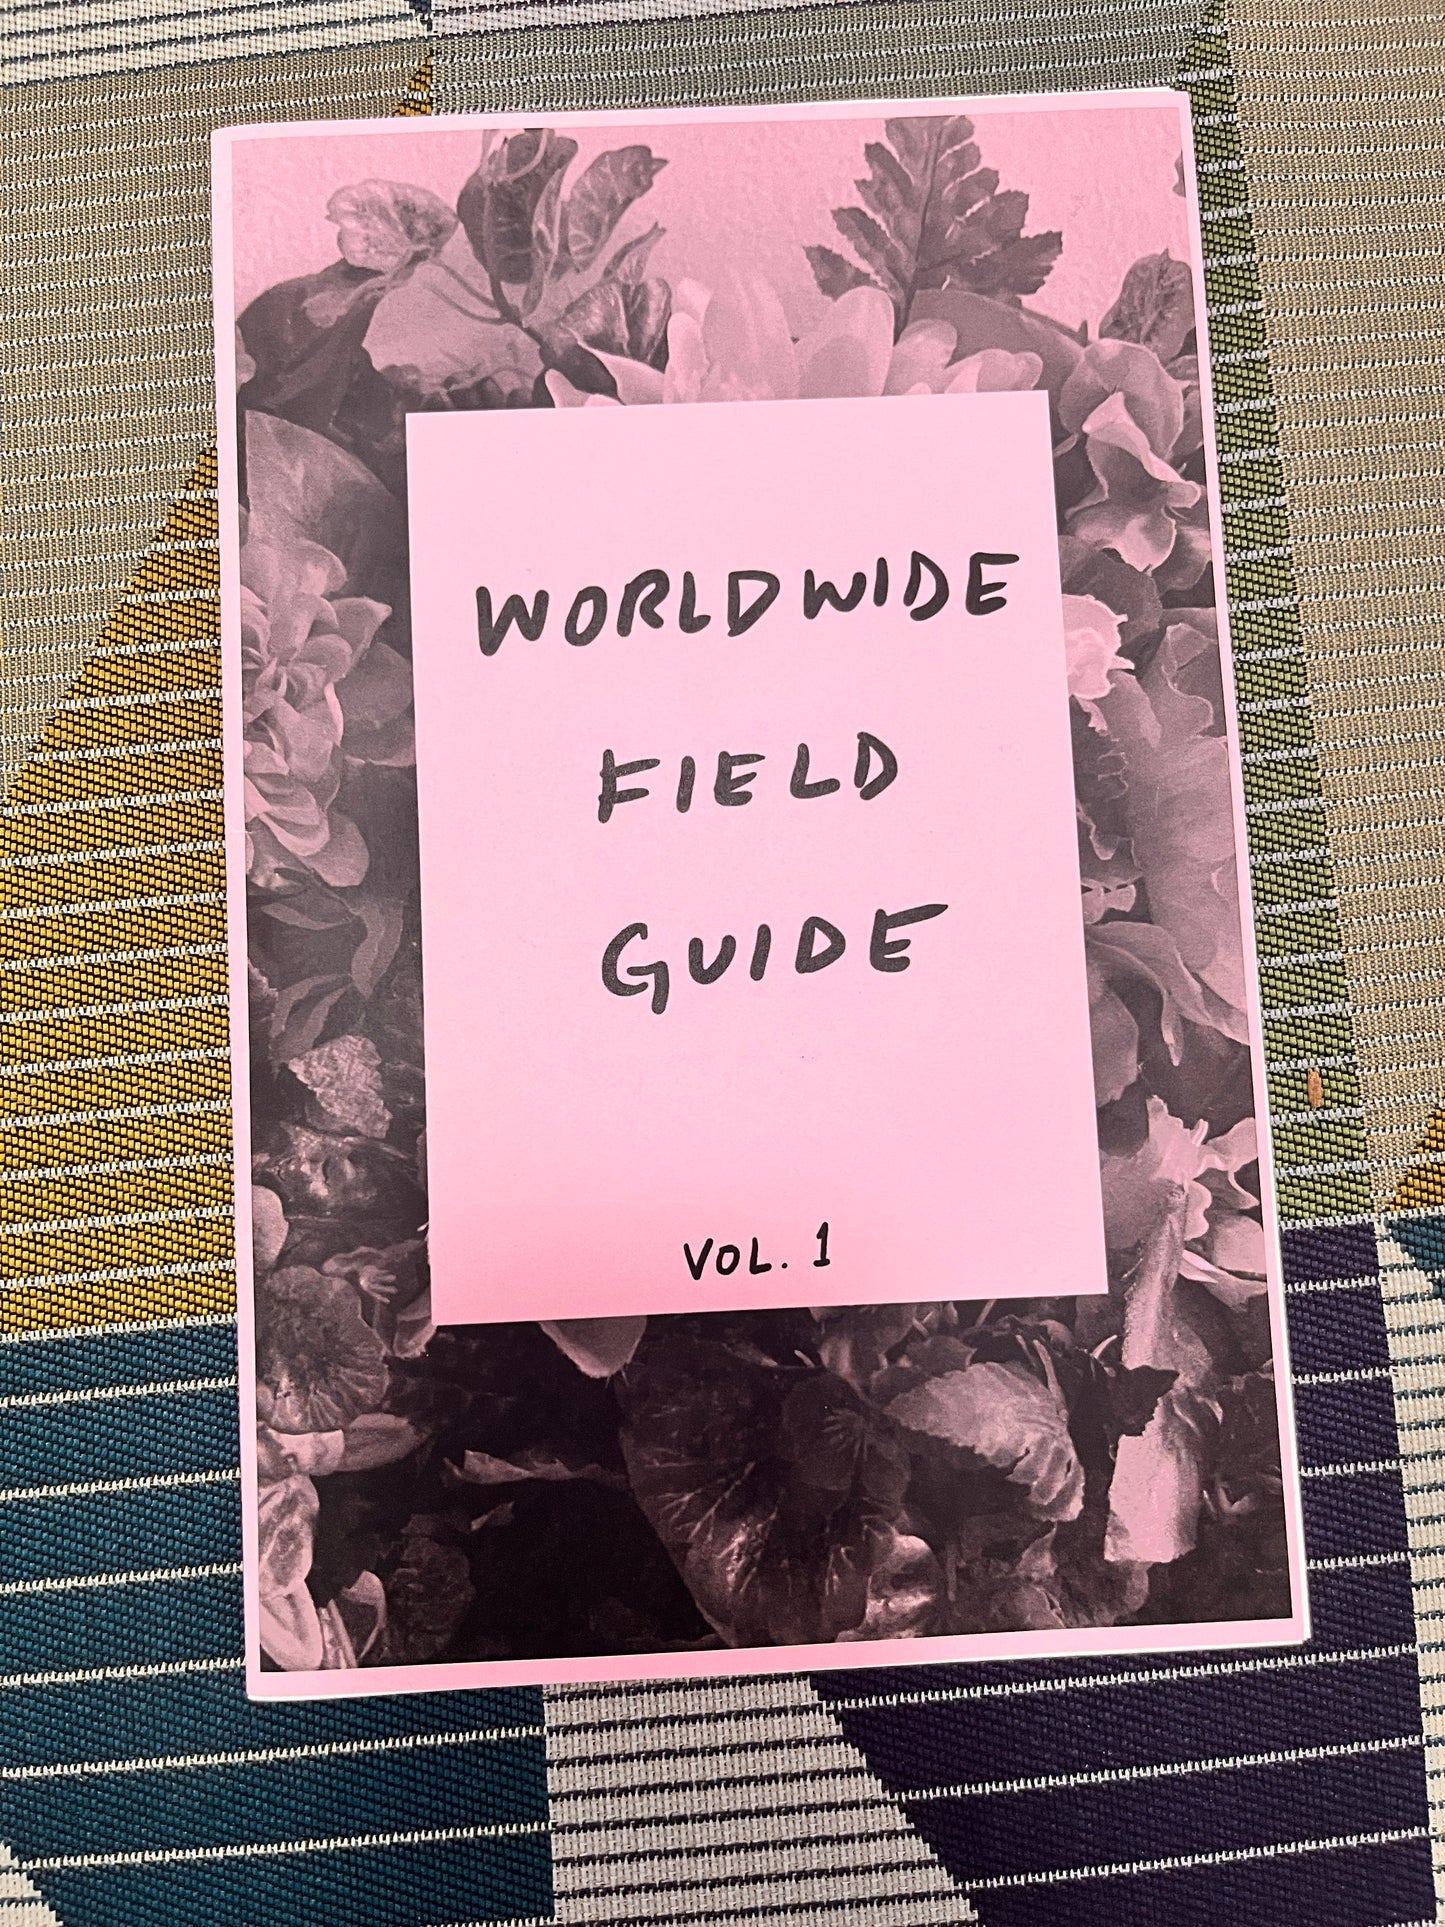 Worldwide Field Guide Vol.1